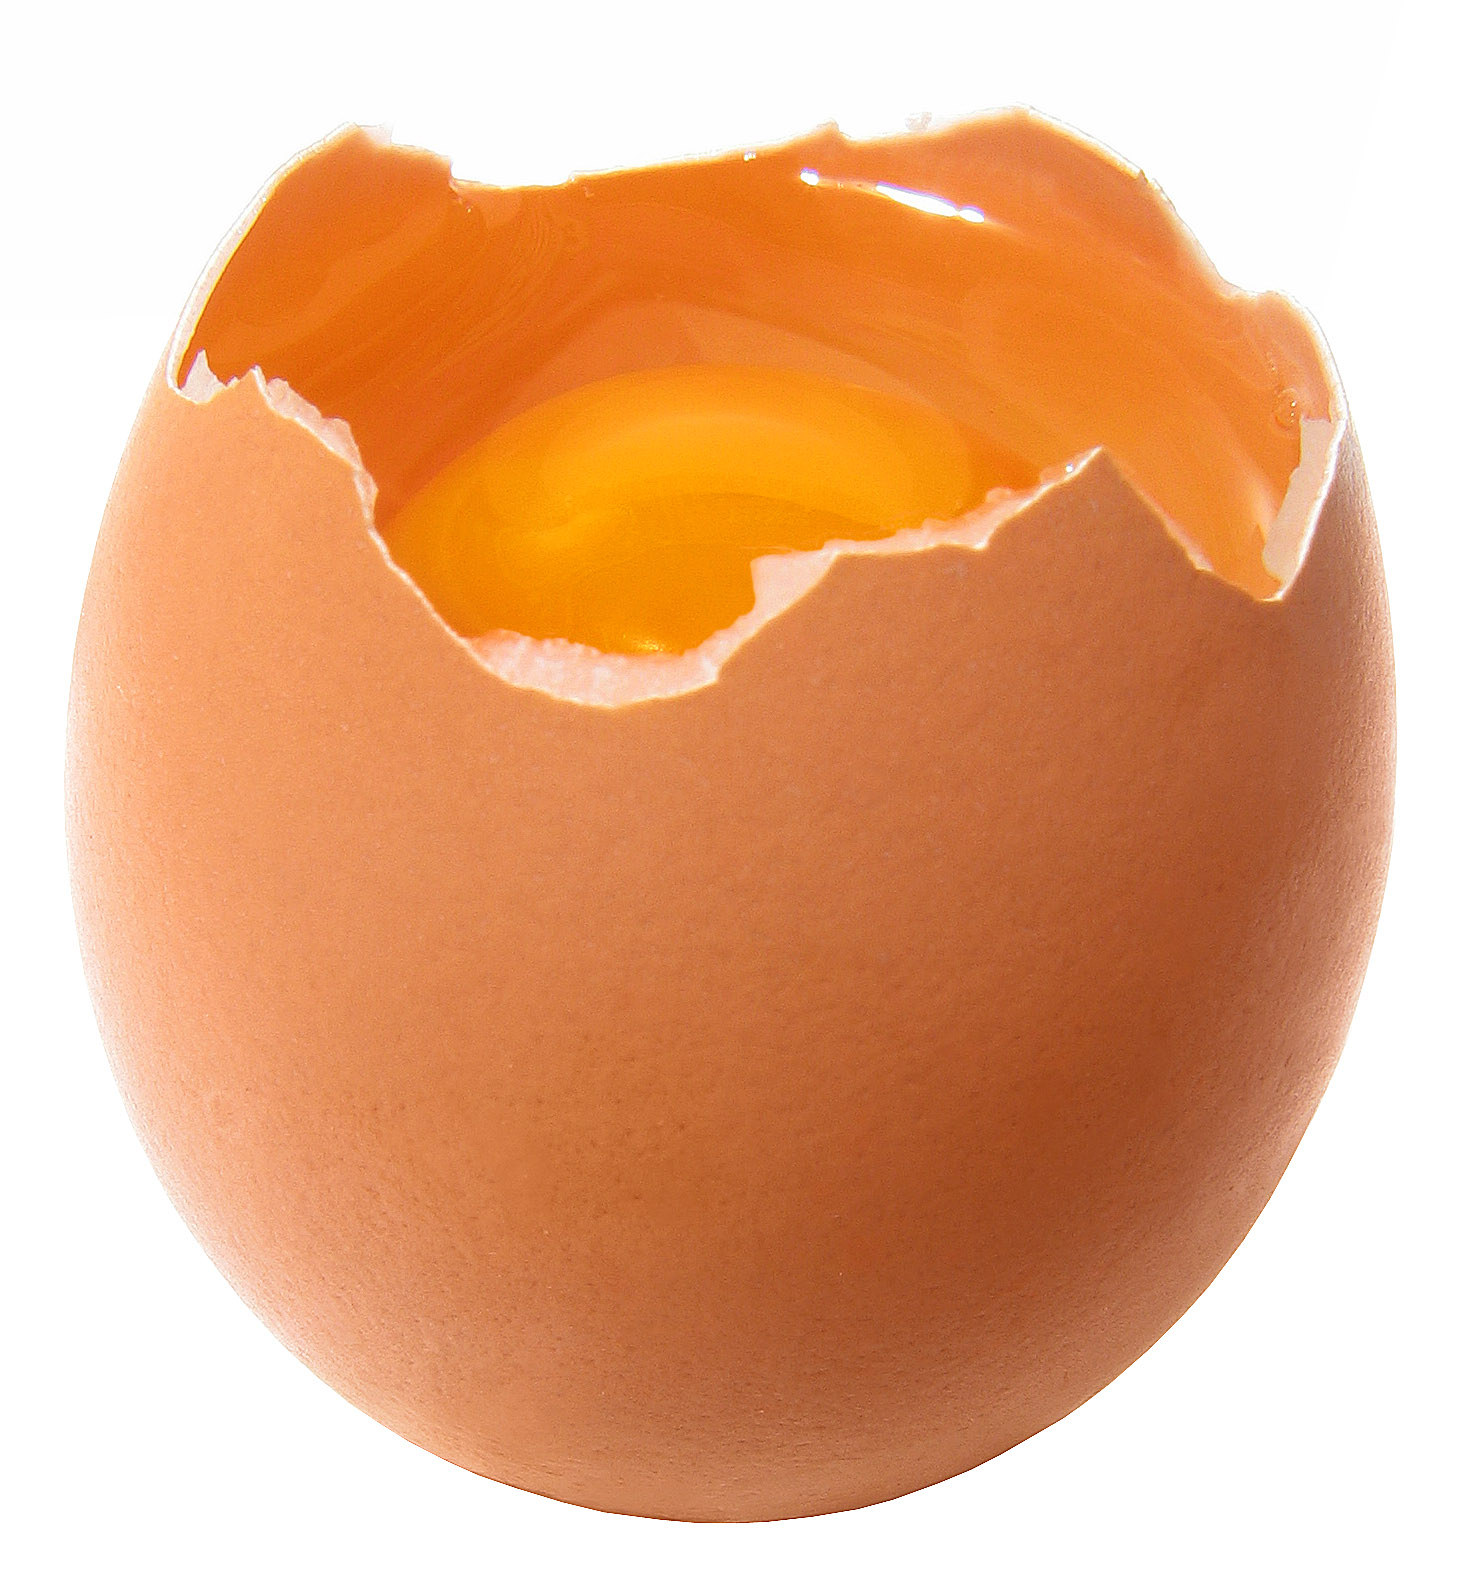 ترميم بيضه مكسوره Broken-egg